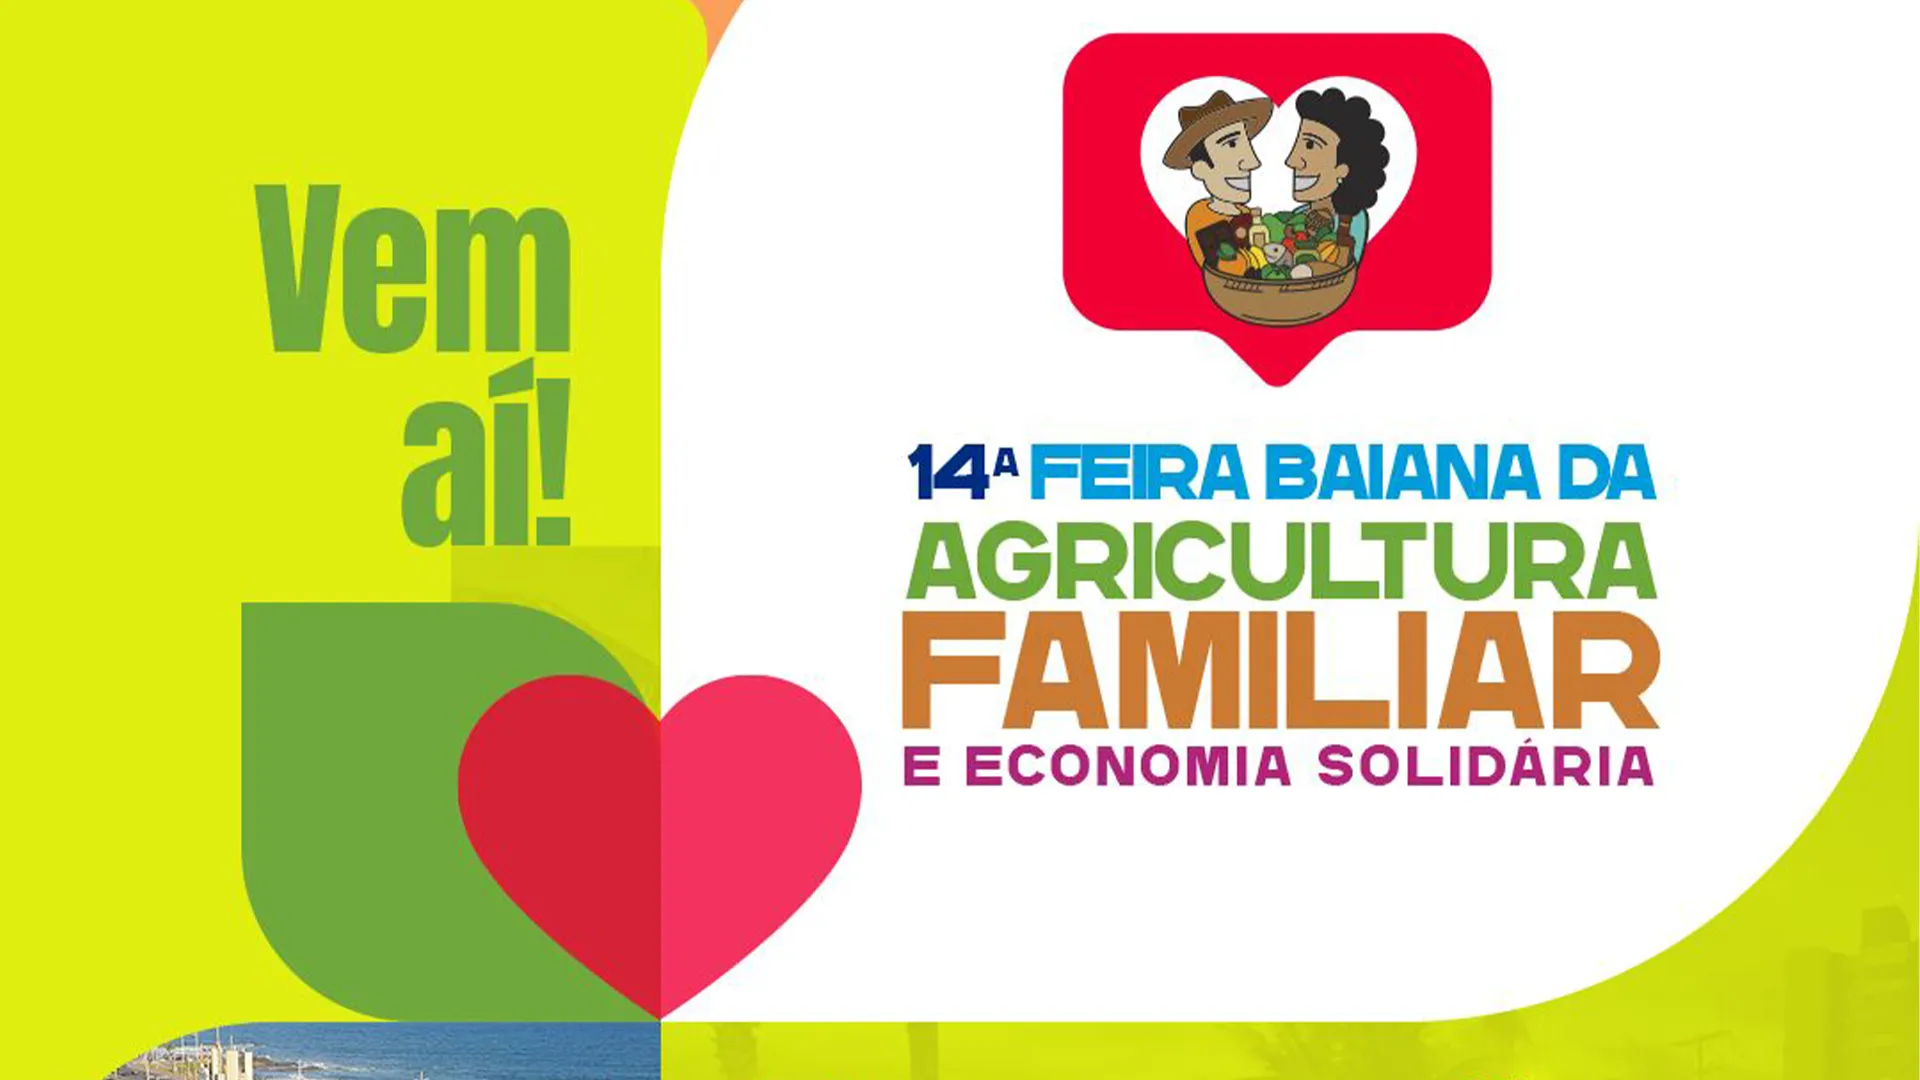 
		Feira Baiana da Agricultura Familiar e Economia Solidária